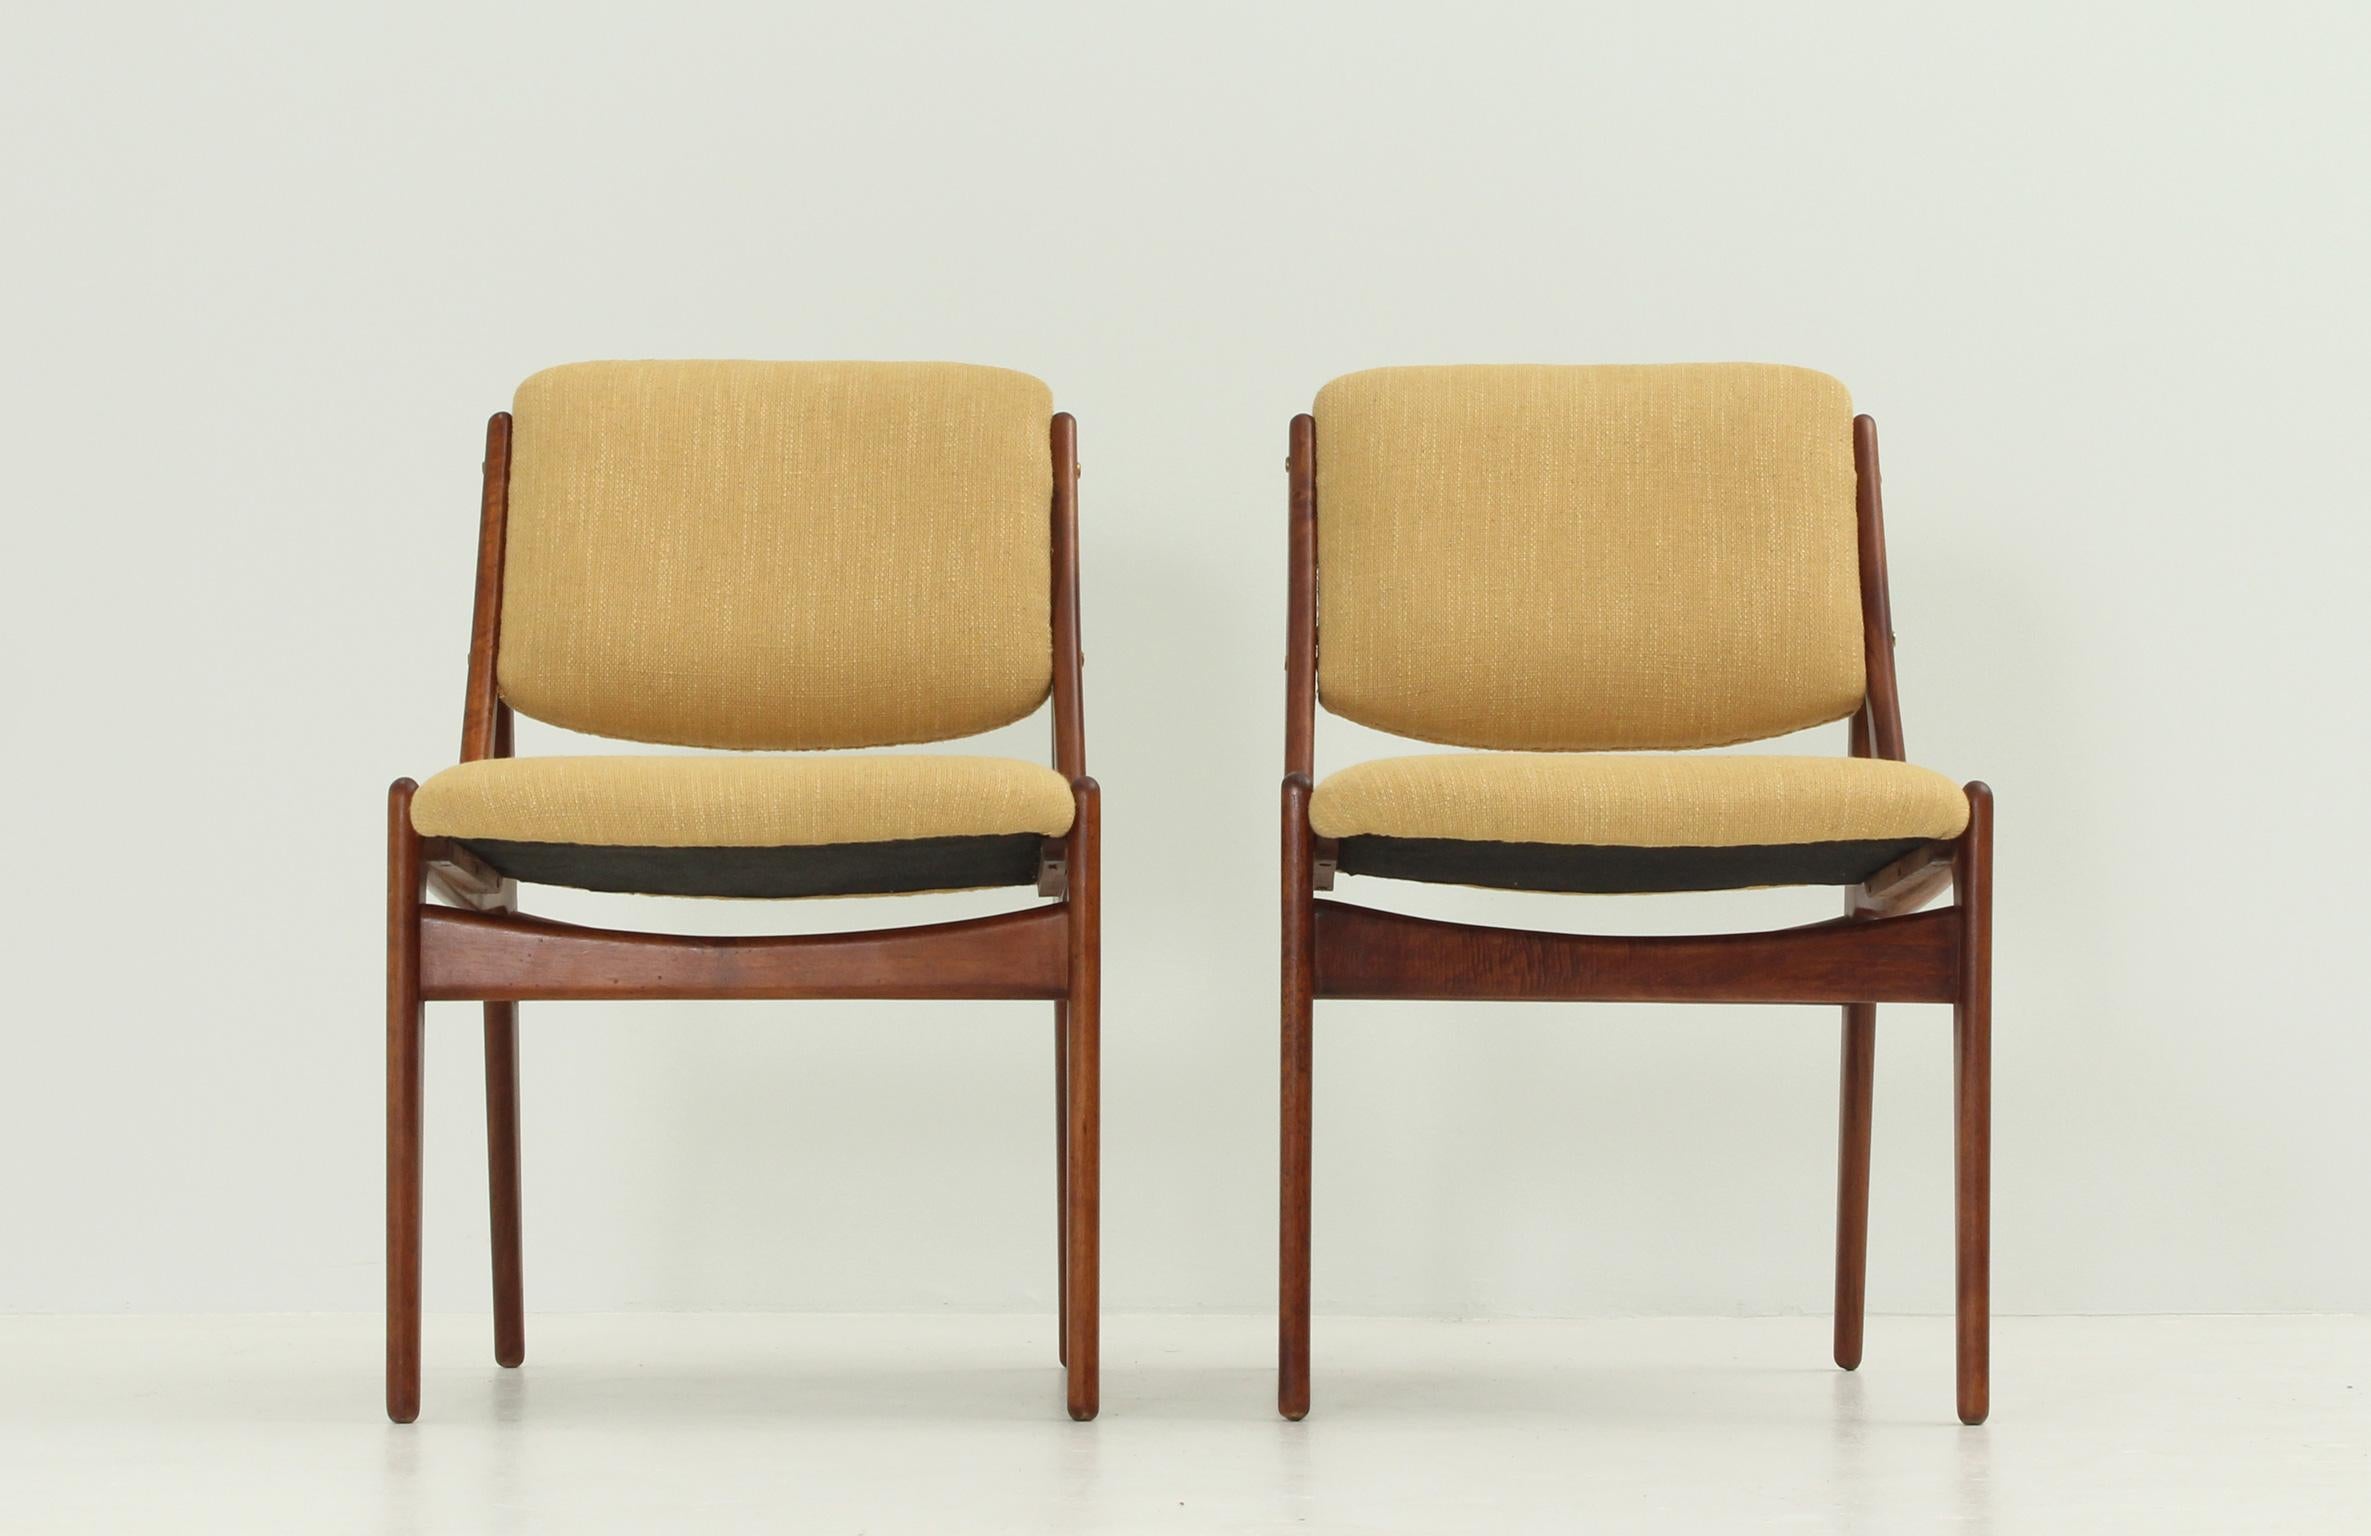 Scandinavian Modern Pair of Ella Chairs in Walnut by Arne Vodder, 1962